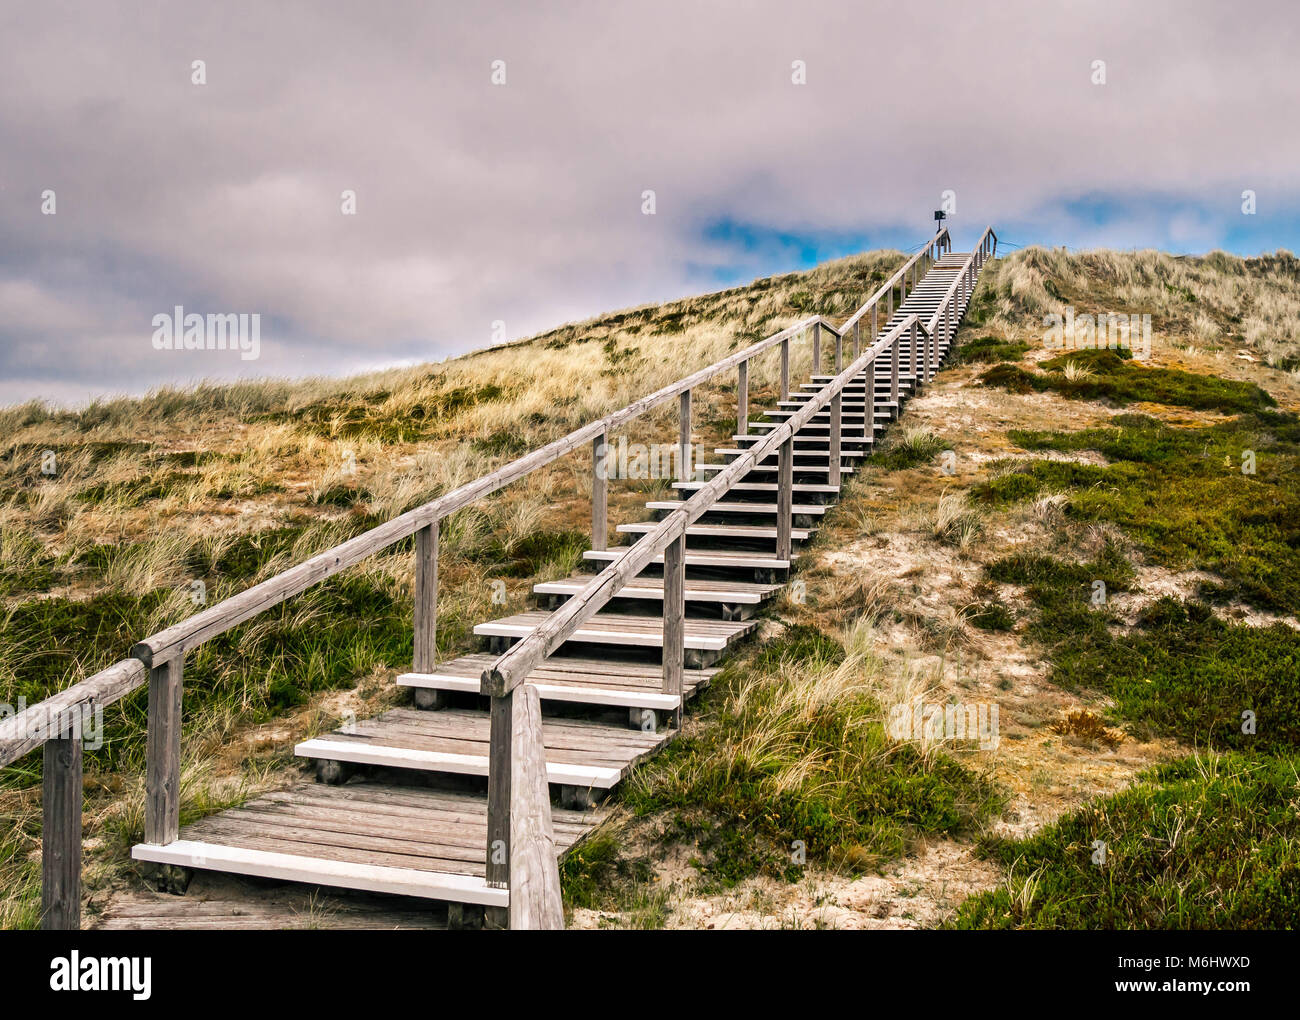 La passerella in legno in salita a una duna sull'isola di Sylt, Germania Foto Stock